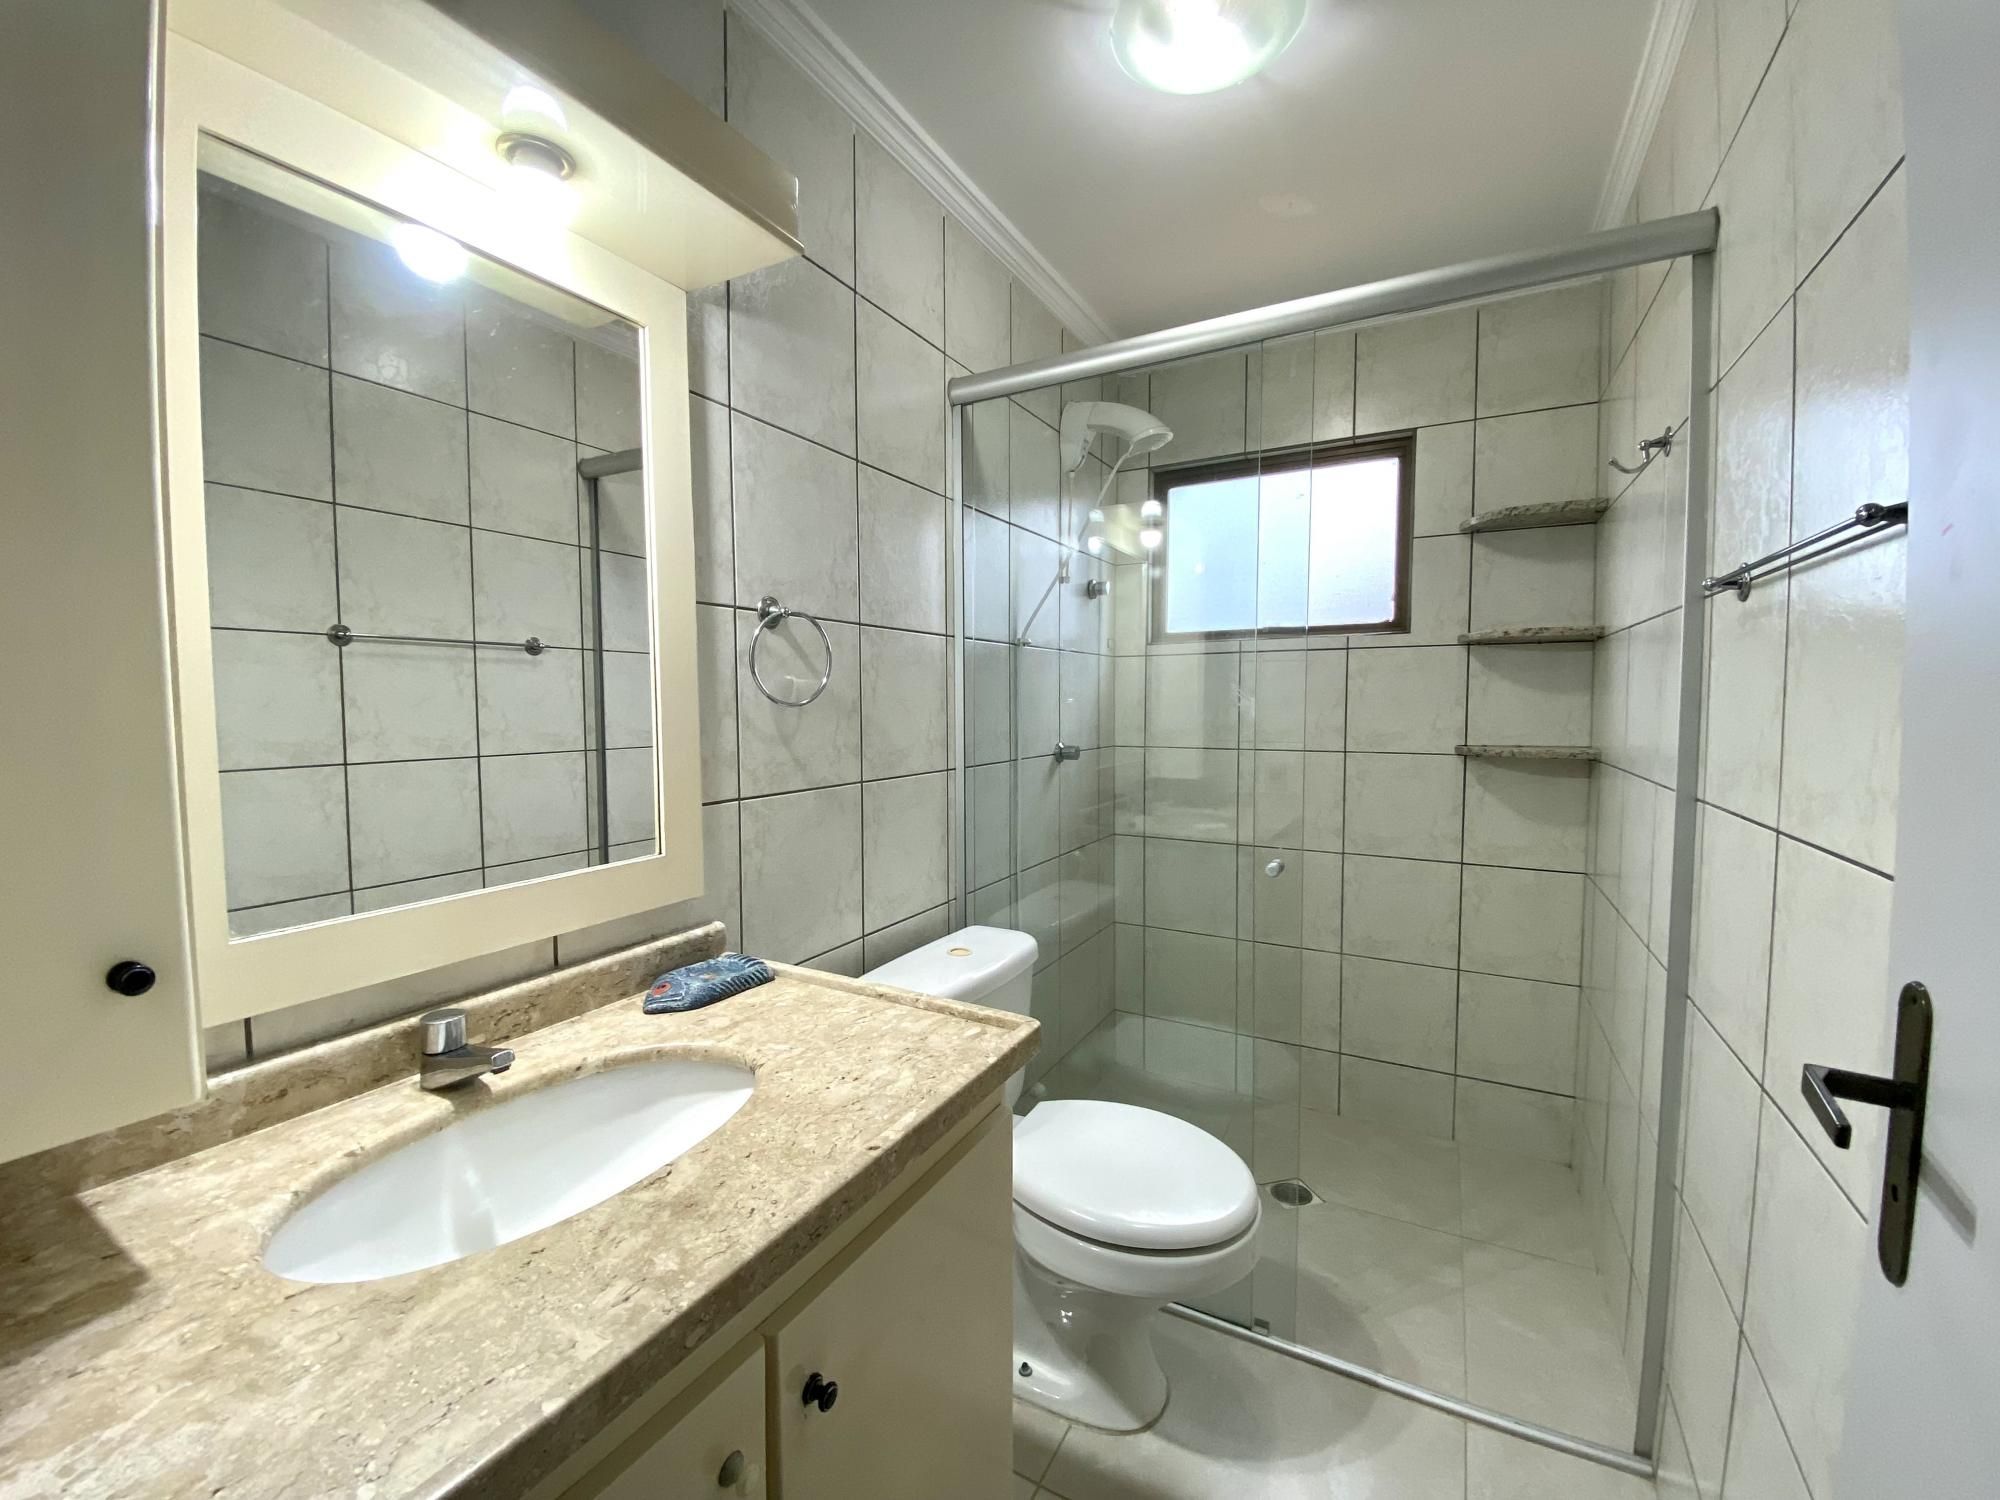 Cobertura com 5 Dormitórios para alugar, 243 m² por R$ 600,00